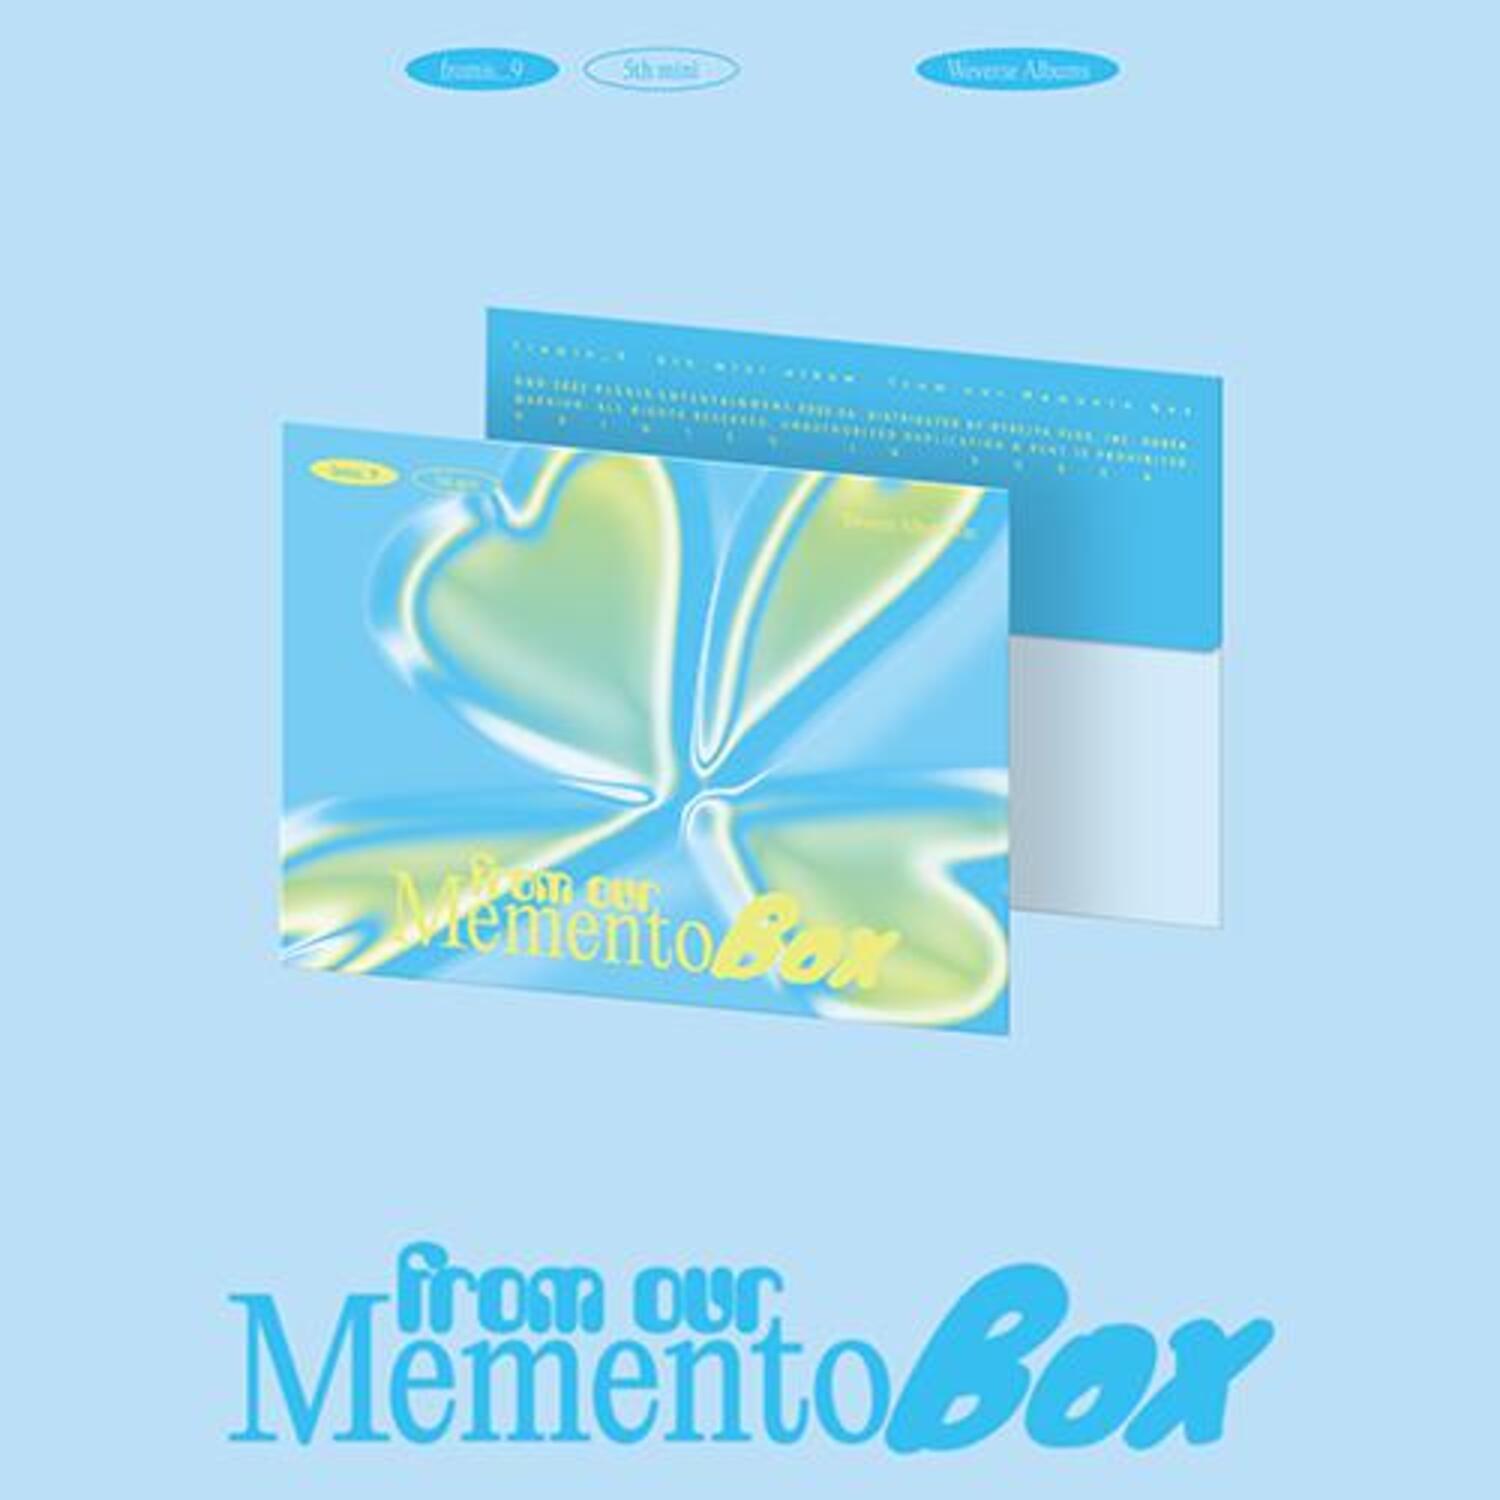 프로미스나인 (fromis_9) -  5th Mini Album [from our Memento Box] (Weverse Albums ver.) (RANDOM)